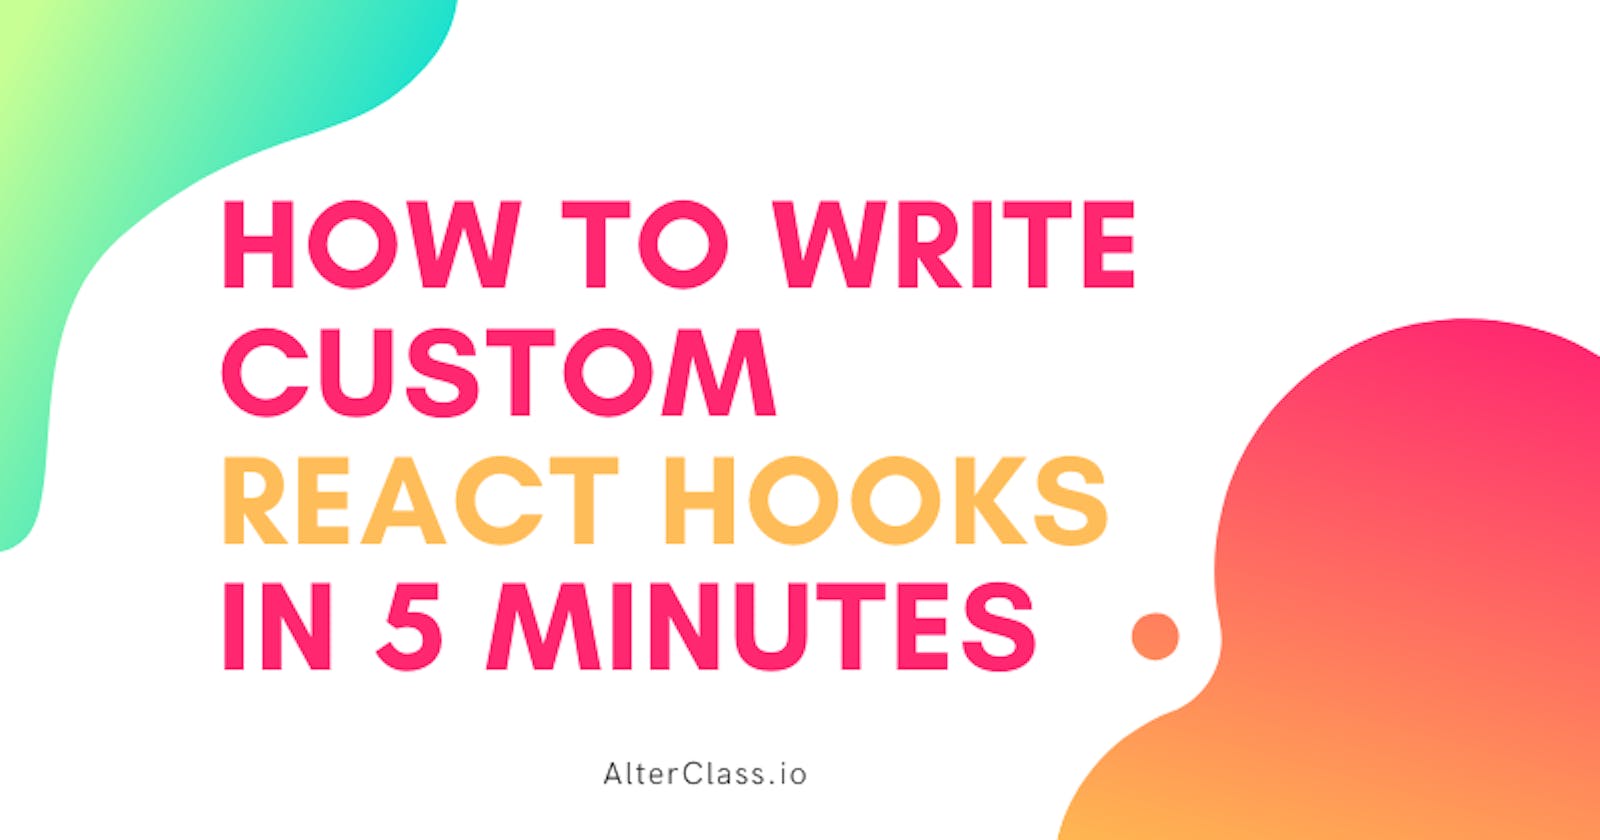 How to write custom REACT HOOKS in 5 minutes